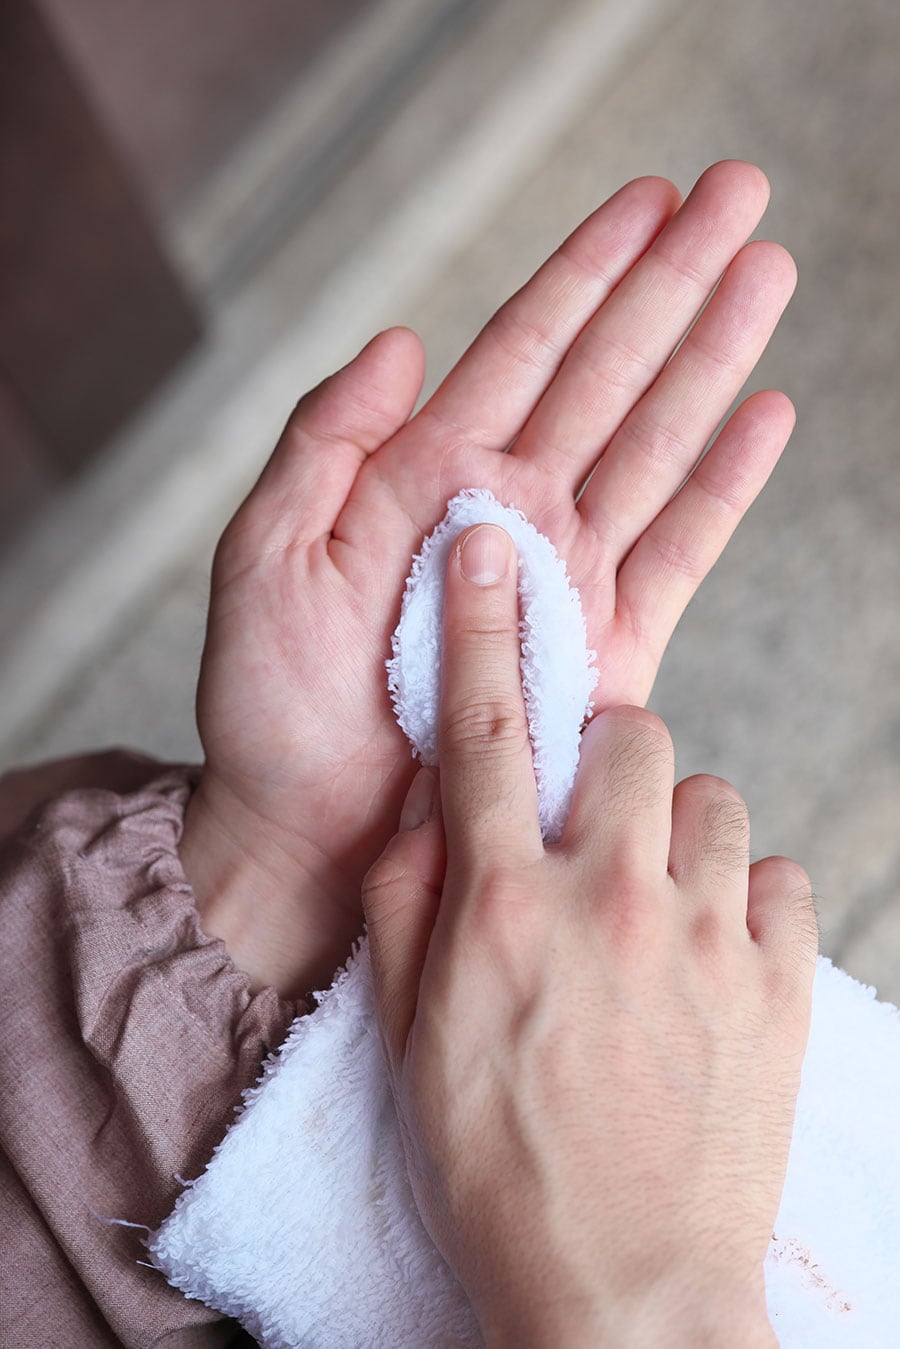 桟や隅を雑巾で拭う際は、雑巾の端に人差し指をあて、親指と中指で根元を軽く絞る。コツは、力まずに握ること(『比叡山大阿闍梨 心を掃除する』より)。